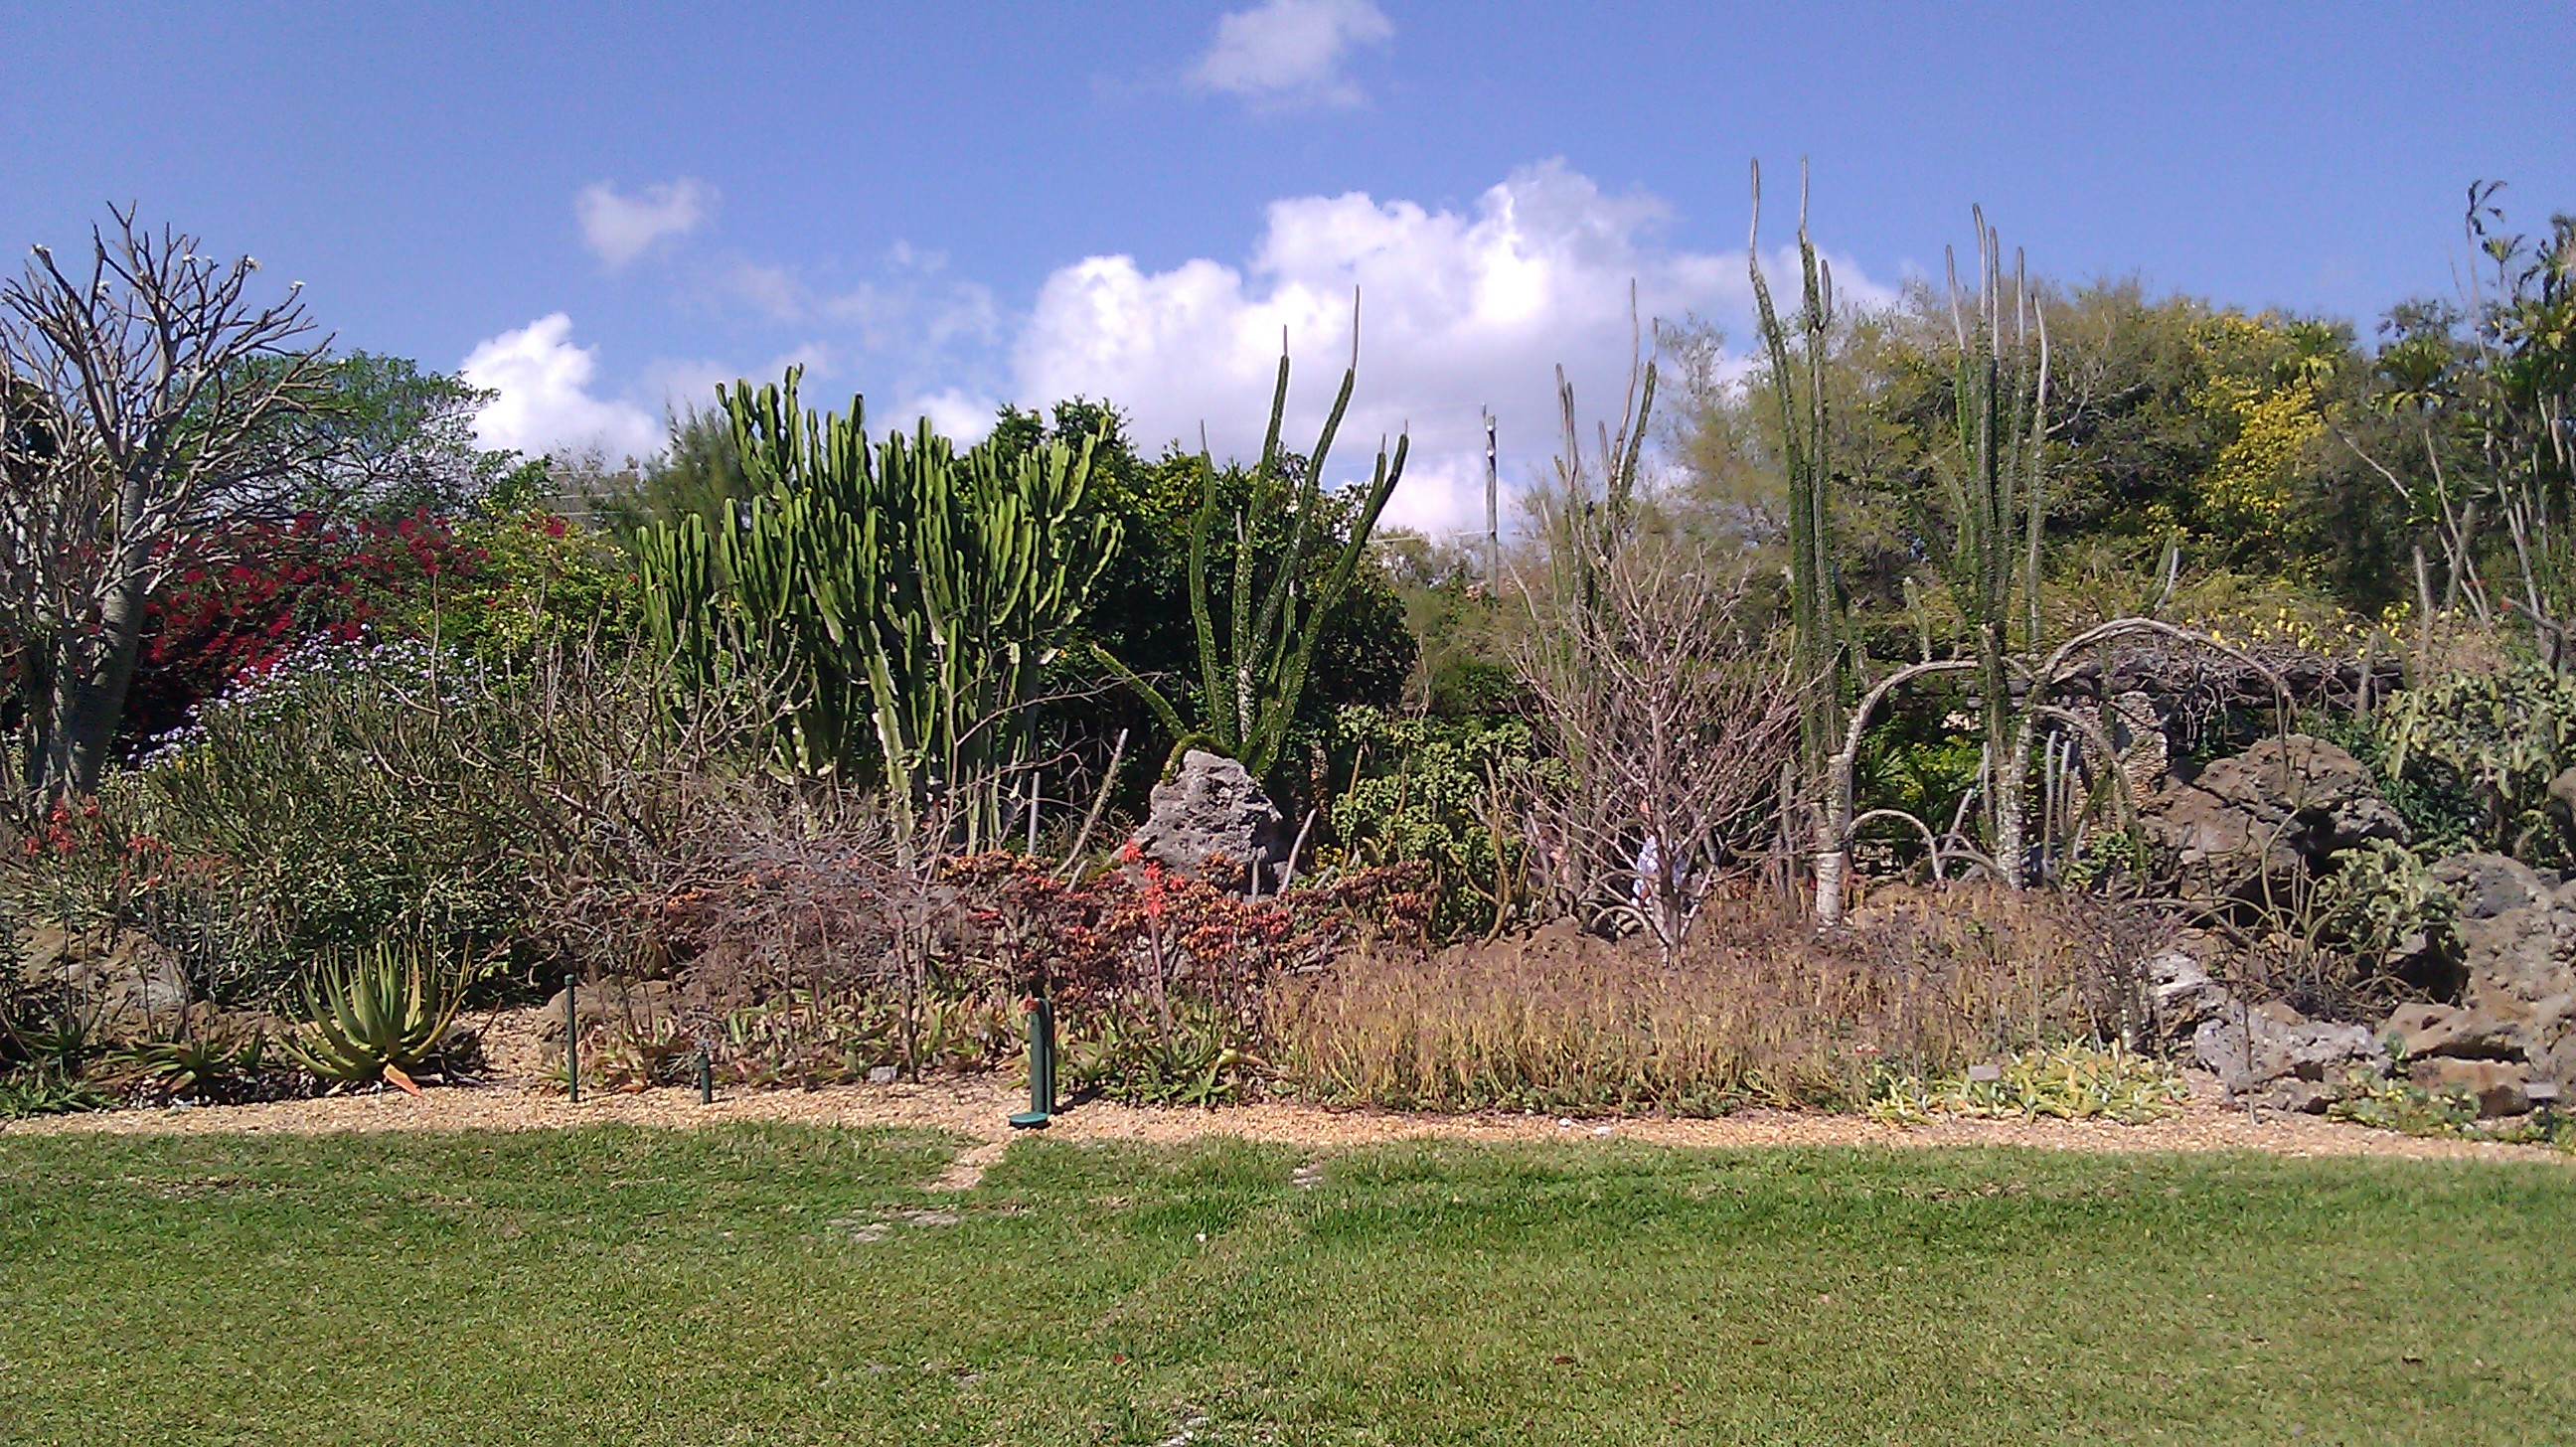 Walking through Fairchild Tropical Botanic Garden (Photo by Elizabeth de Armas).